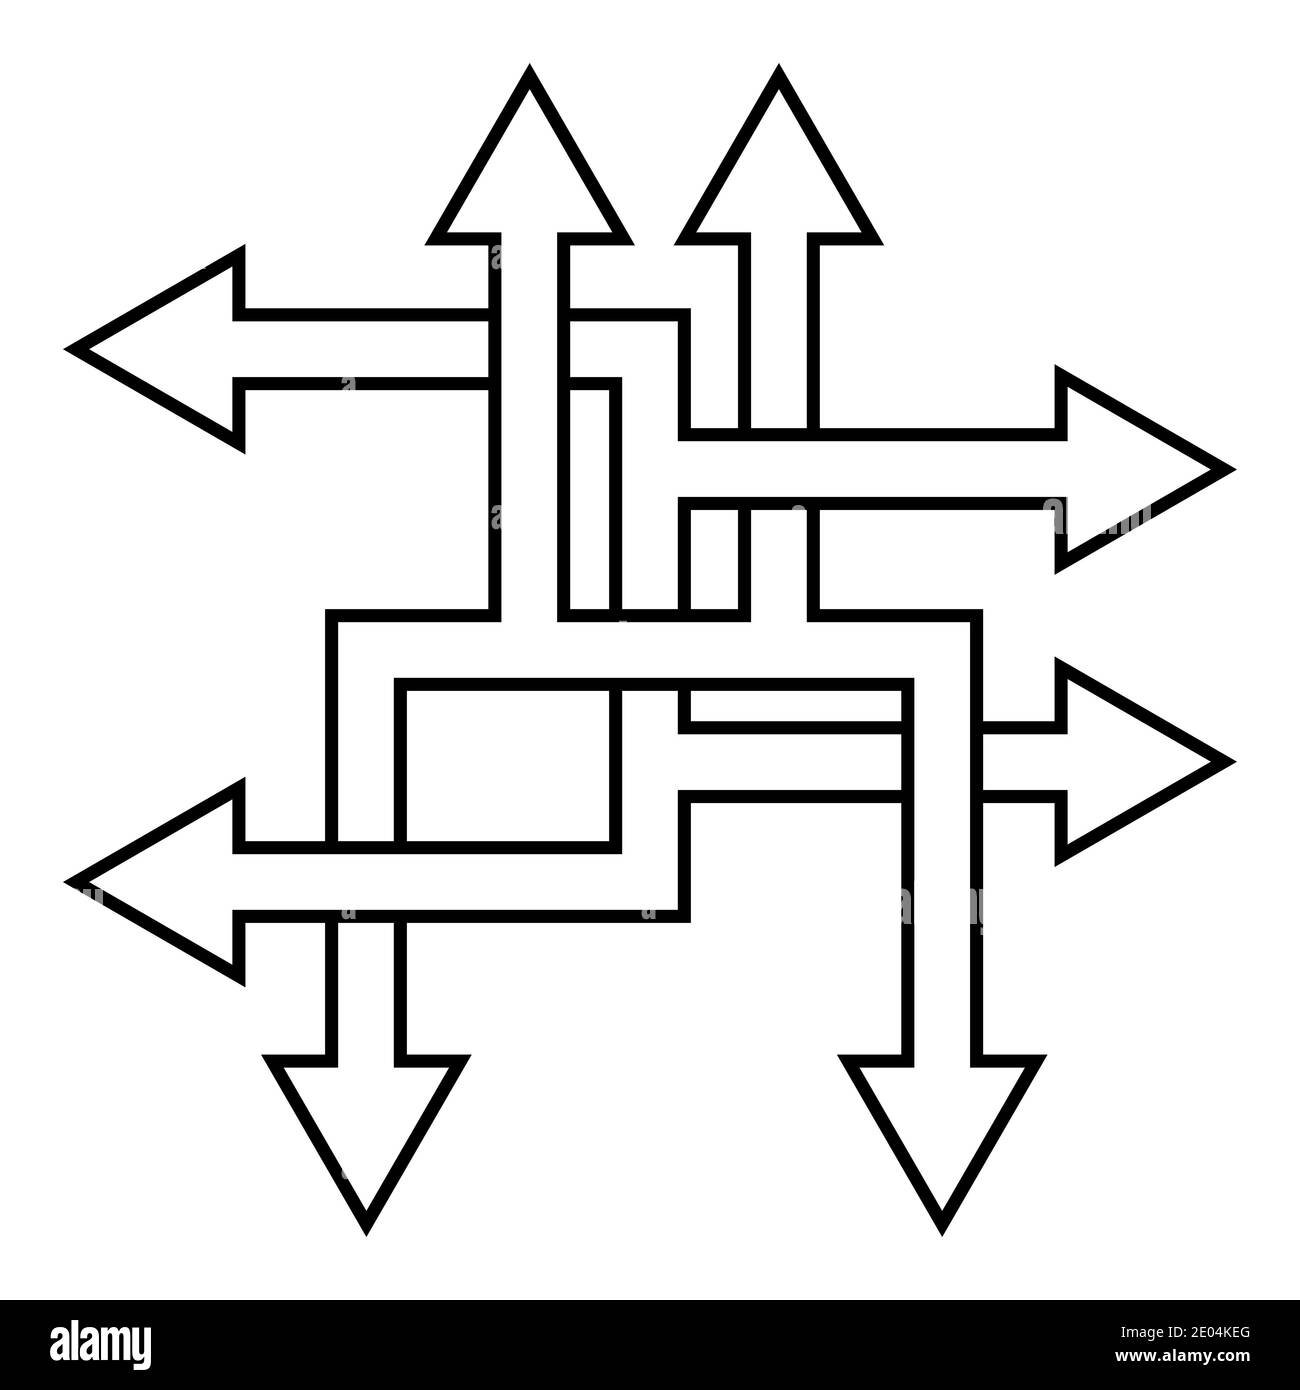 Des façons complexes résoudre des problèmes complexes, vecteur flèche direction symbole de chemin optimisation du processus Illustration de Vecteur